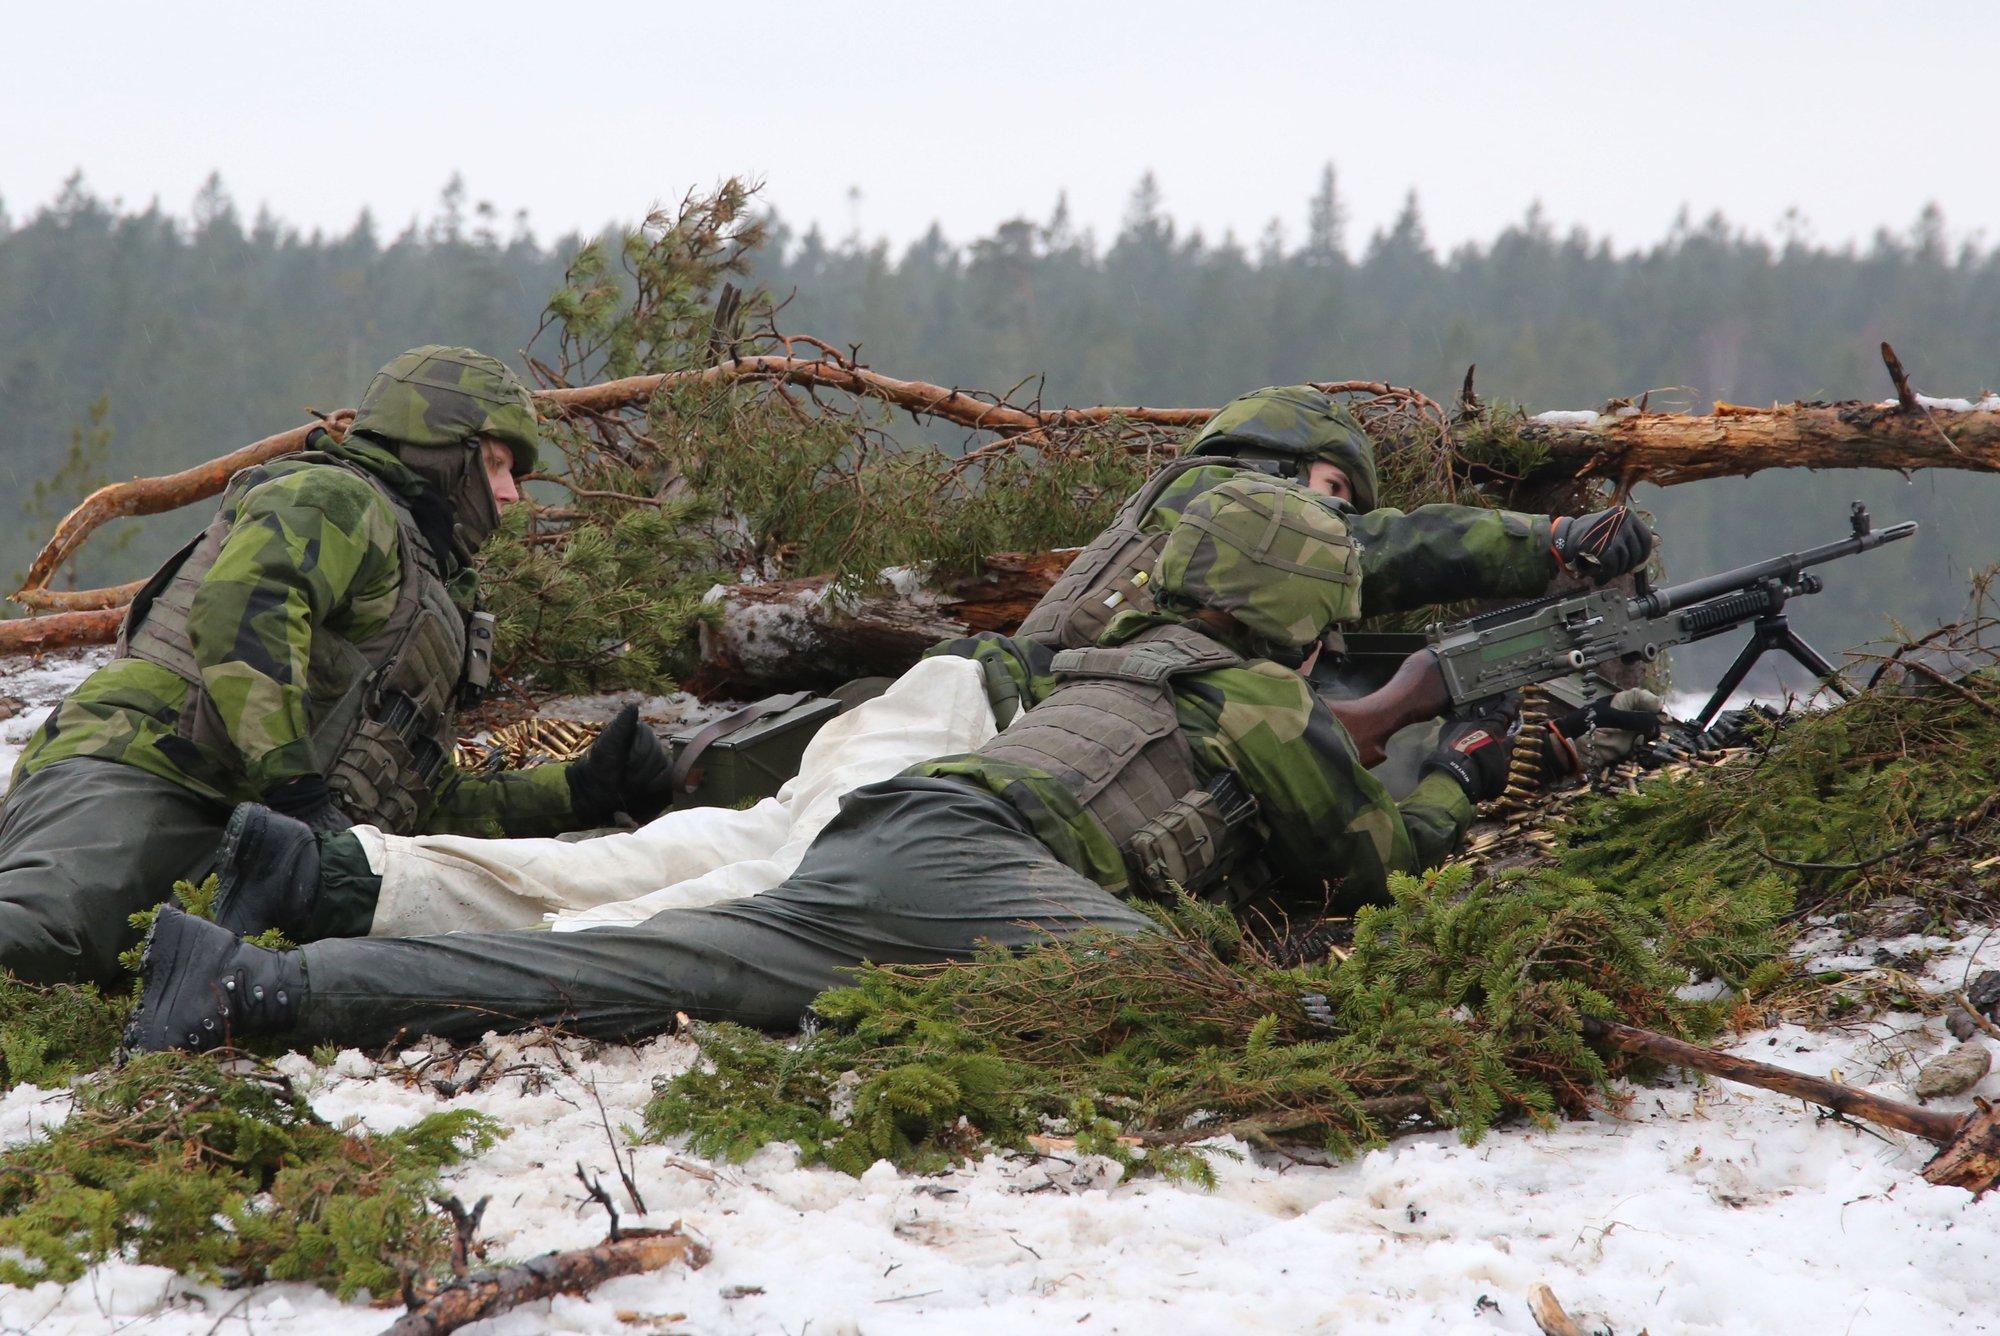 Главы гражданской и военной обороны Швеции призвали население готовиться к войне. Кого они боятся?